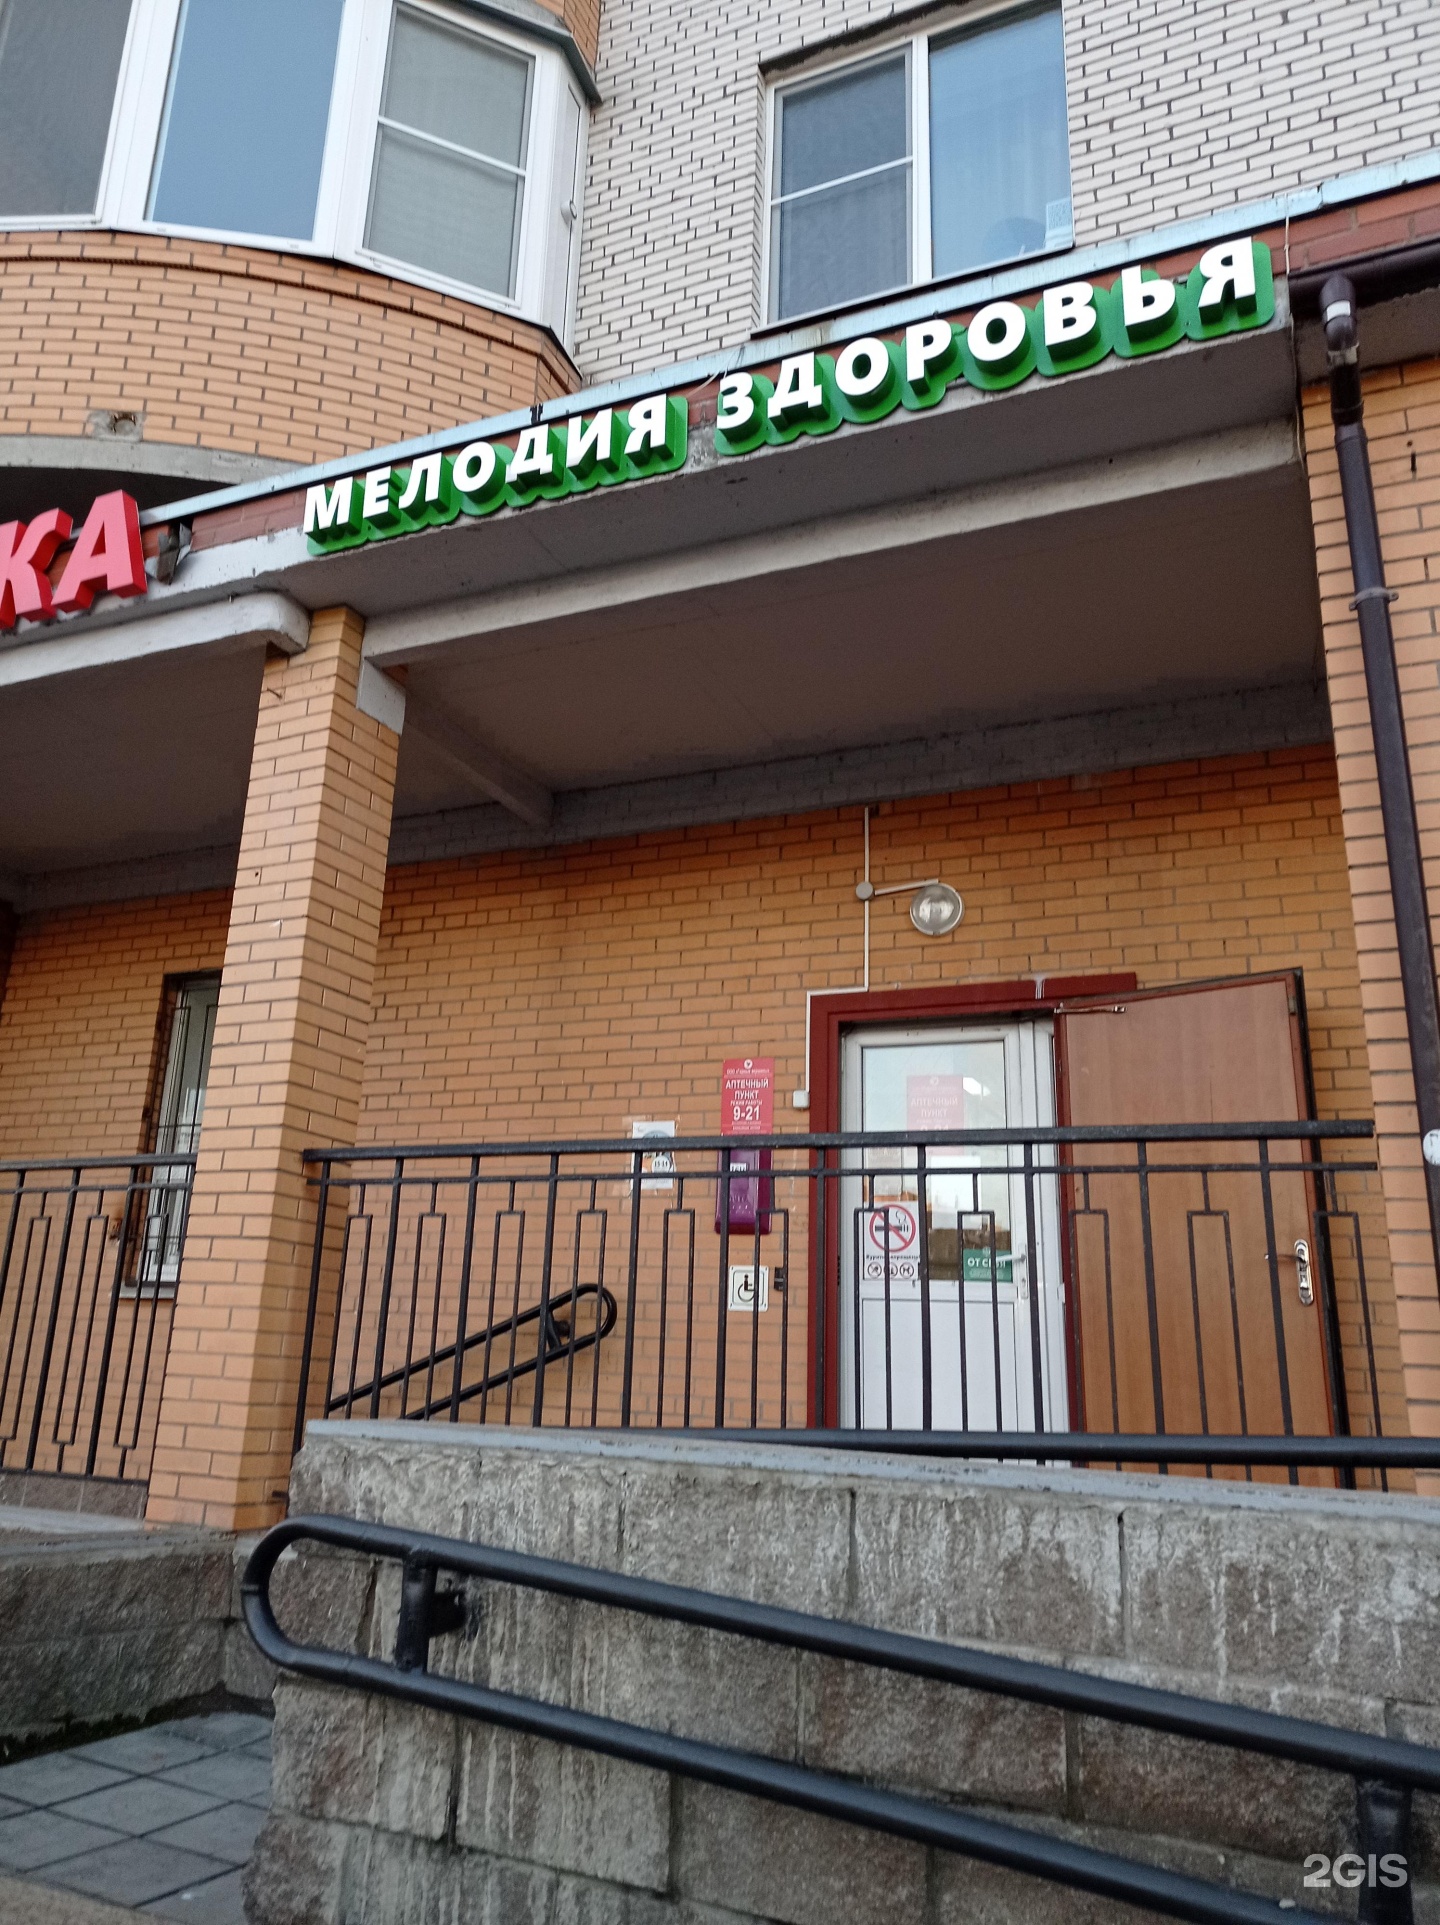 Ленинский проспект 111 Калининград.